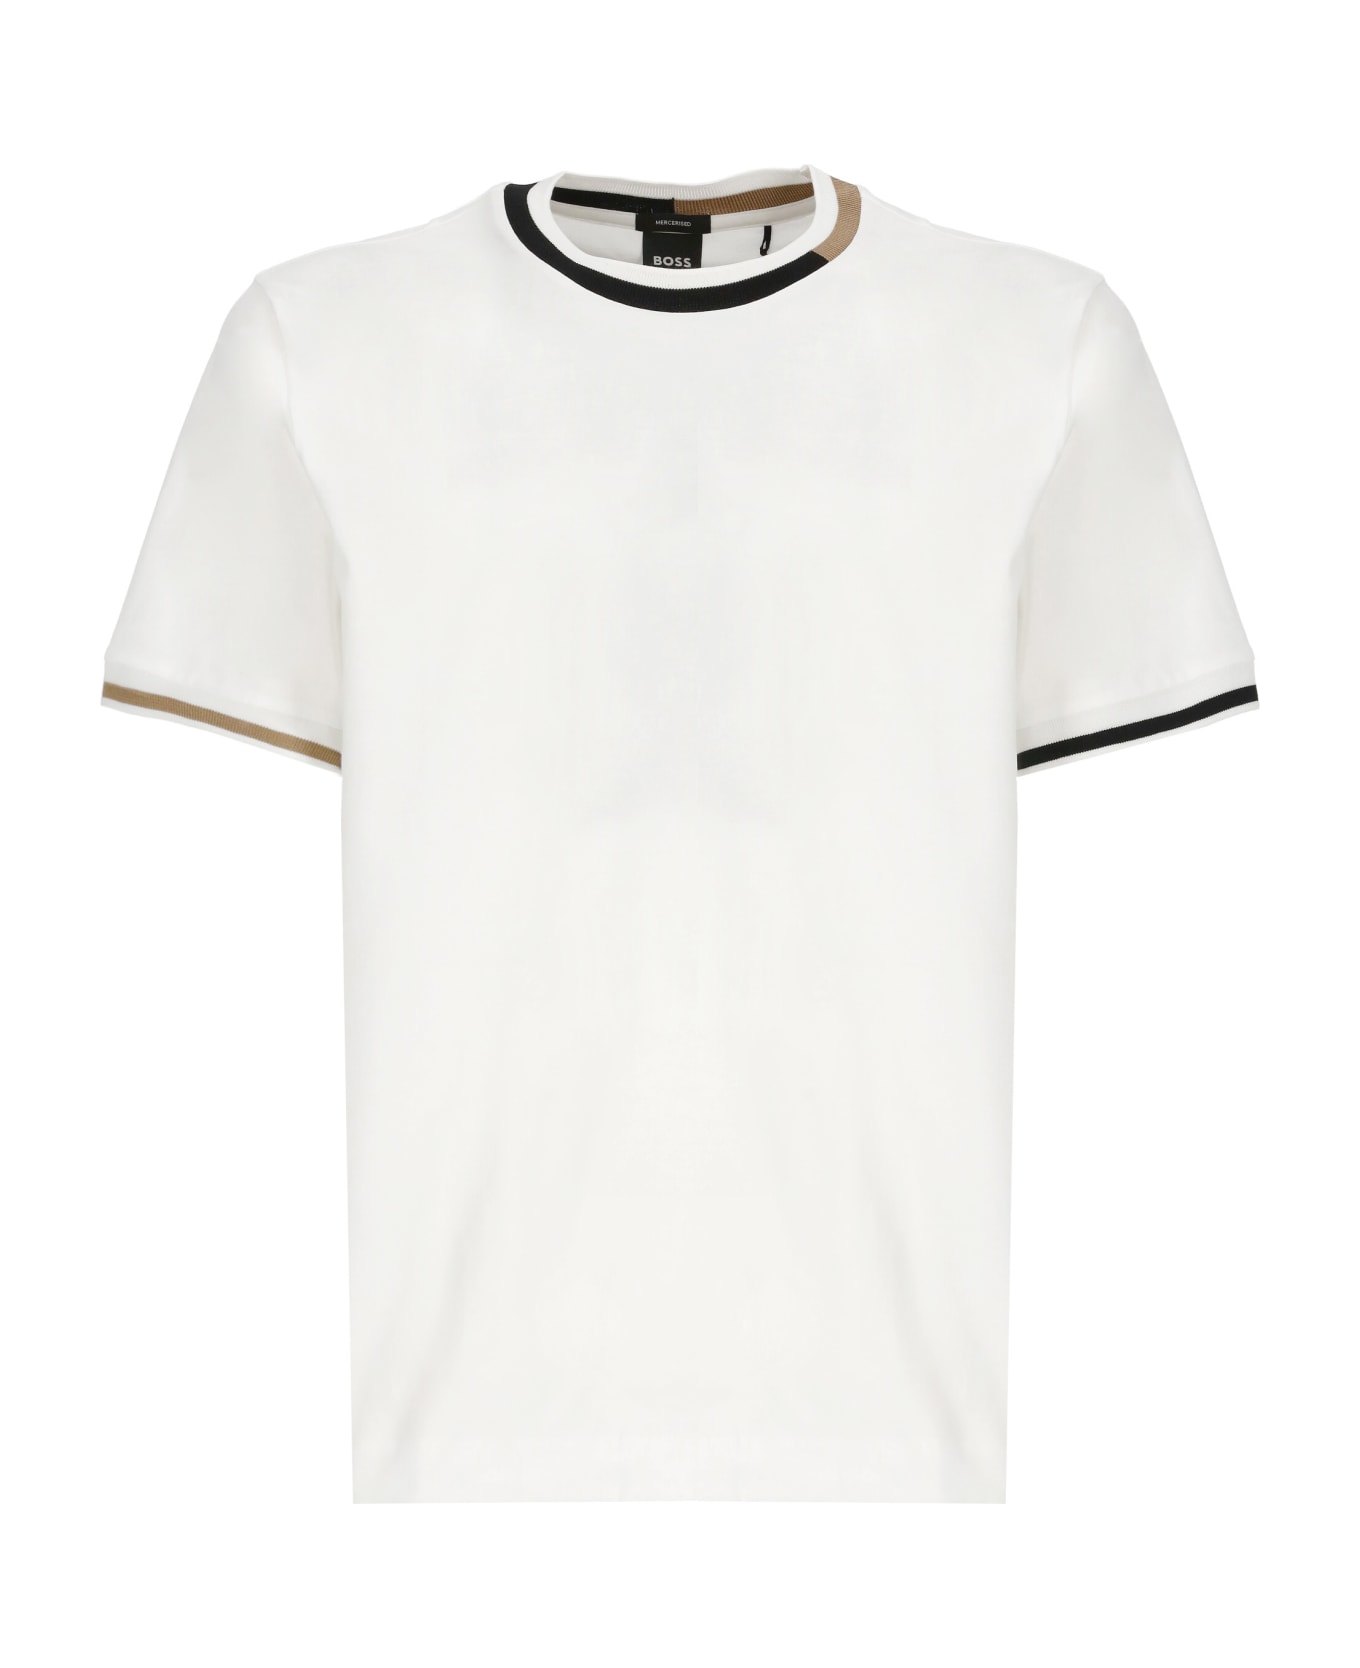 Hugo Boss Thompson 211 T-shirt - White